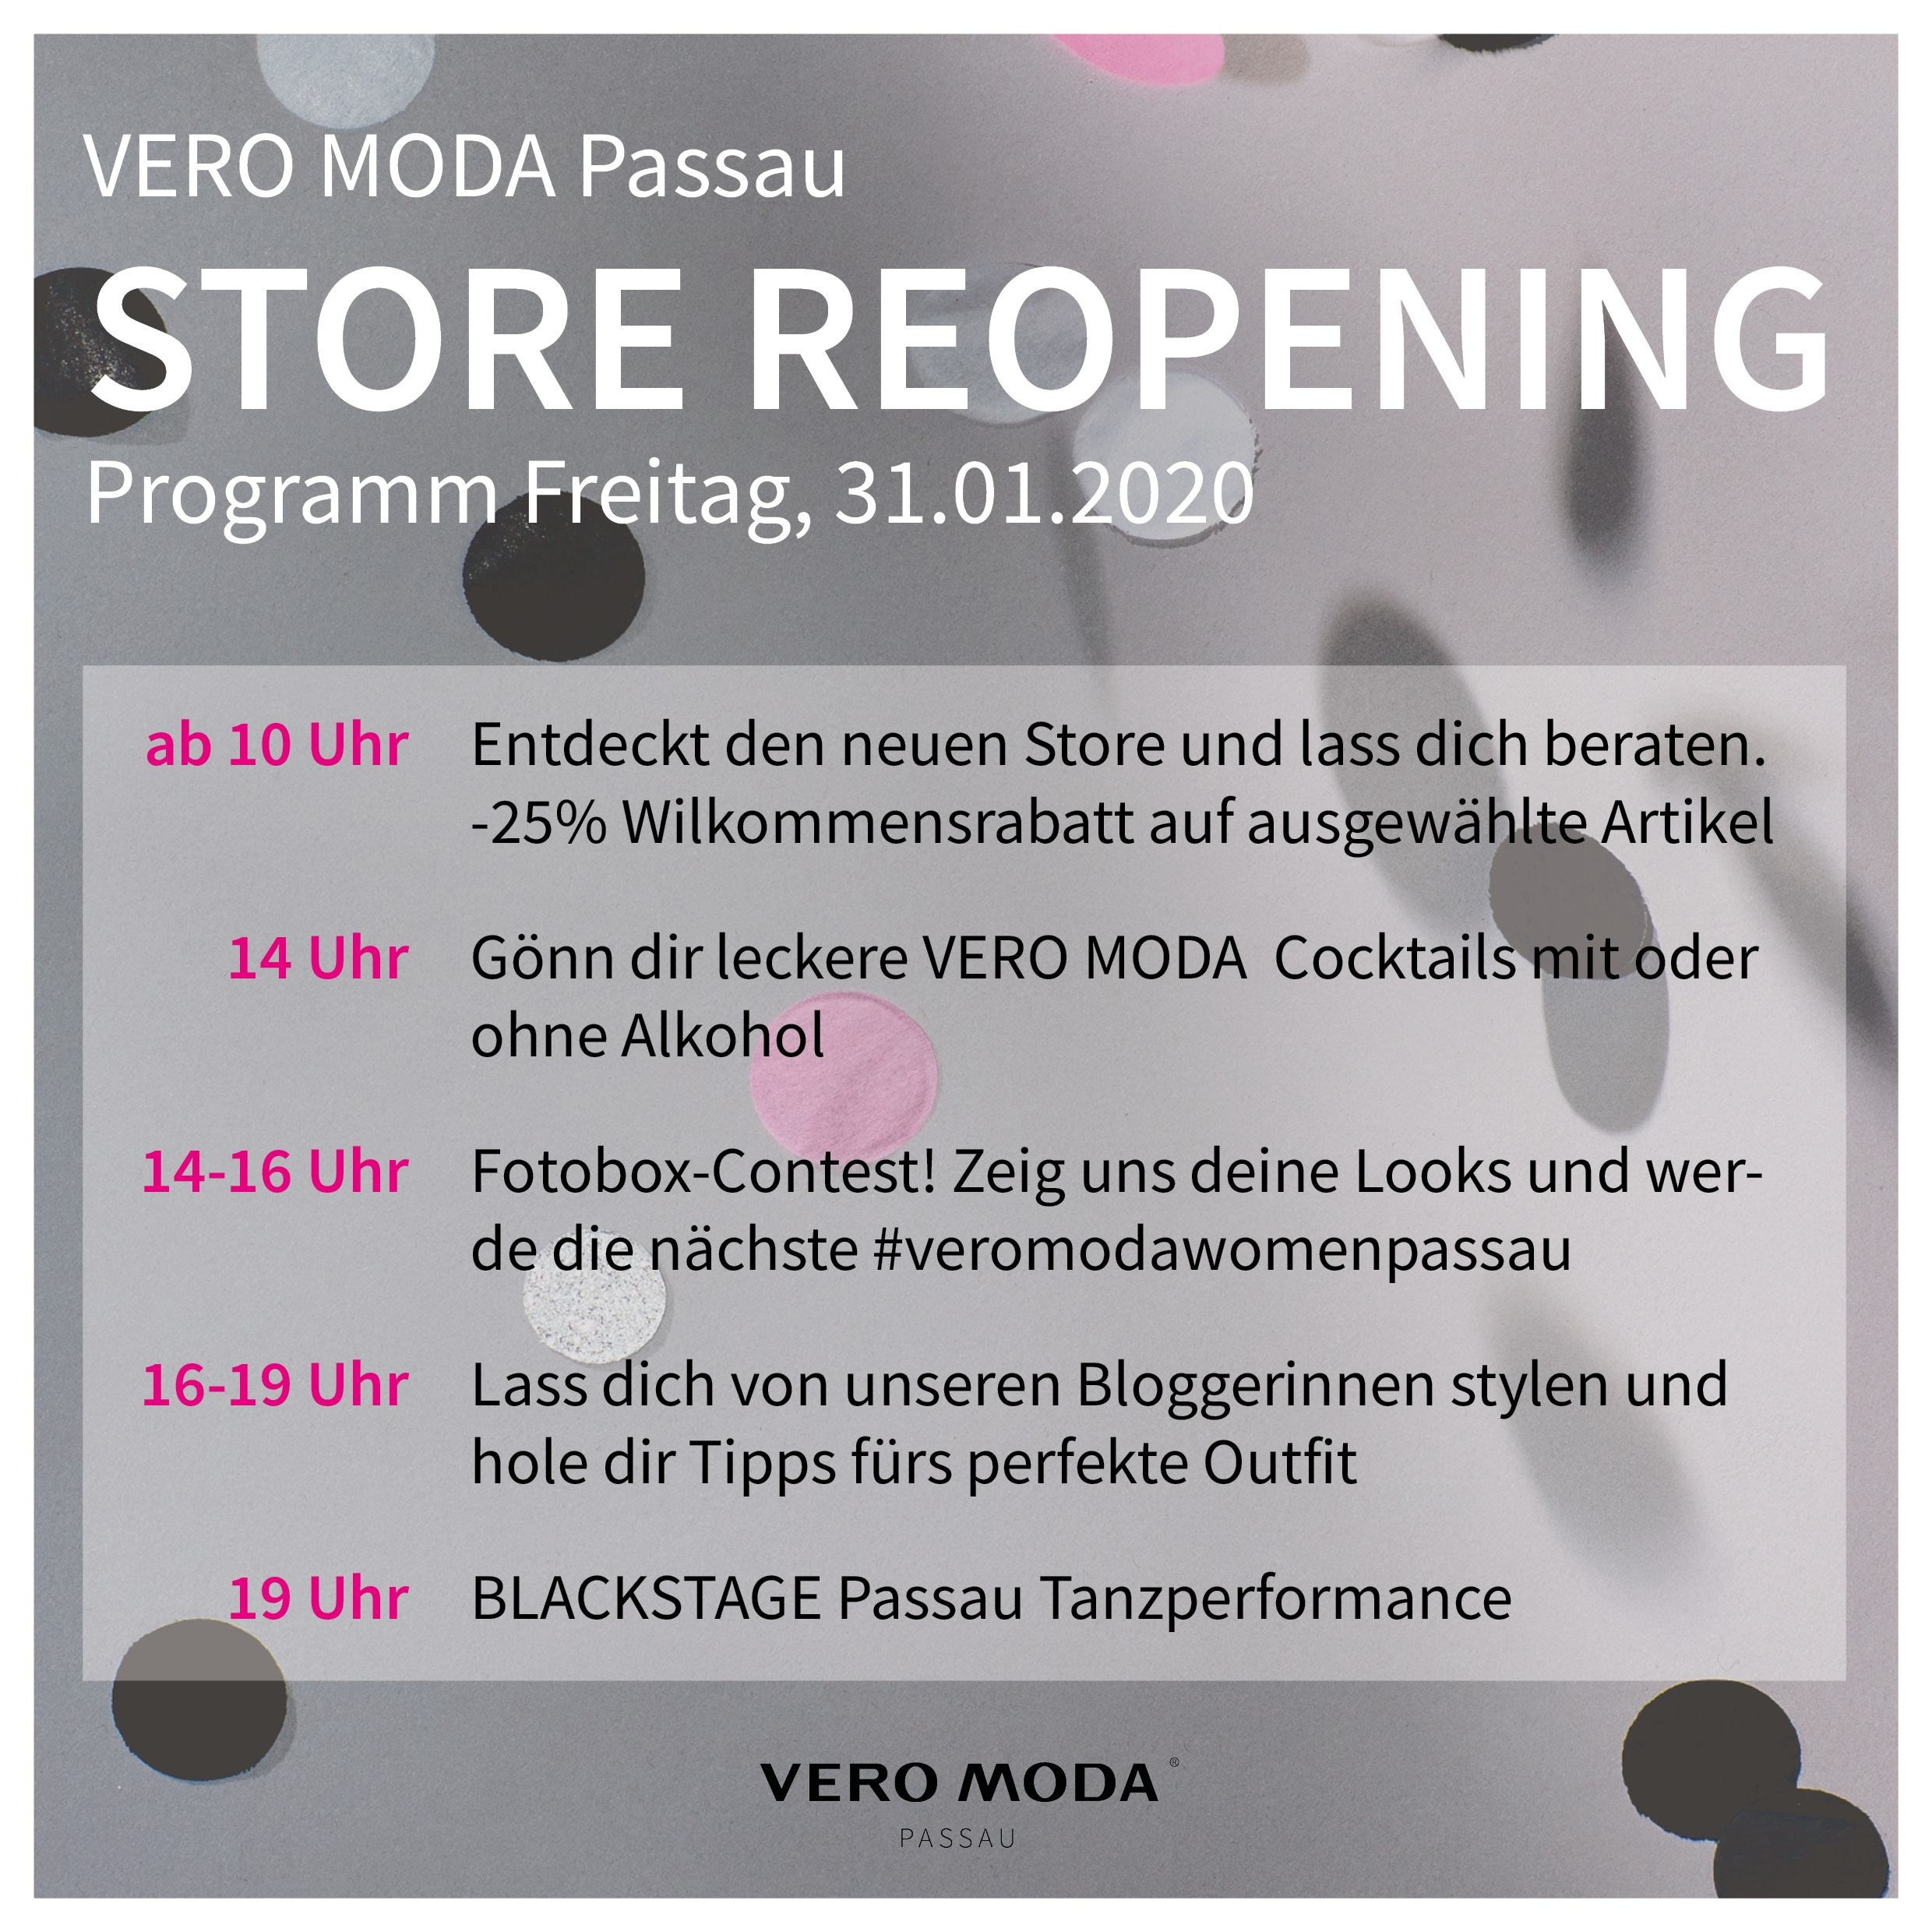 Reopening VERO MODA Passau